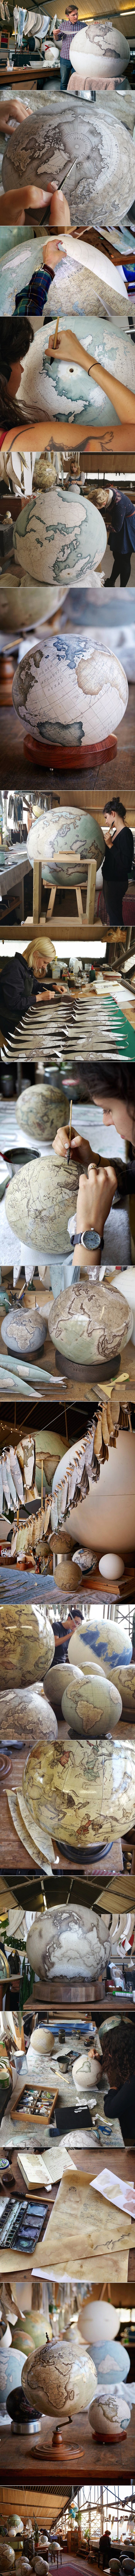 GALERIJA: Posljednji ručno rađeni globusi na svijetu